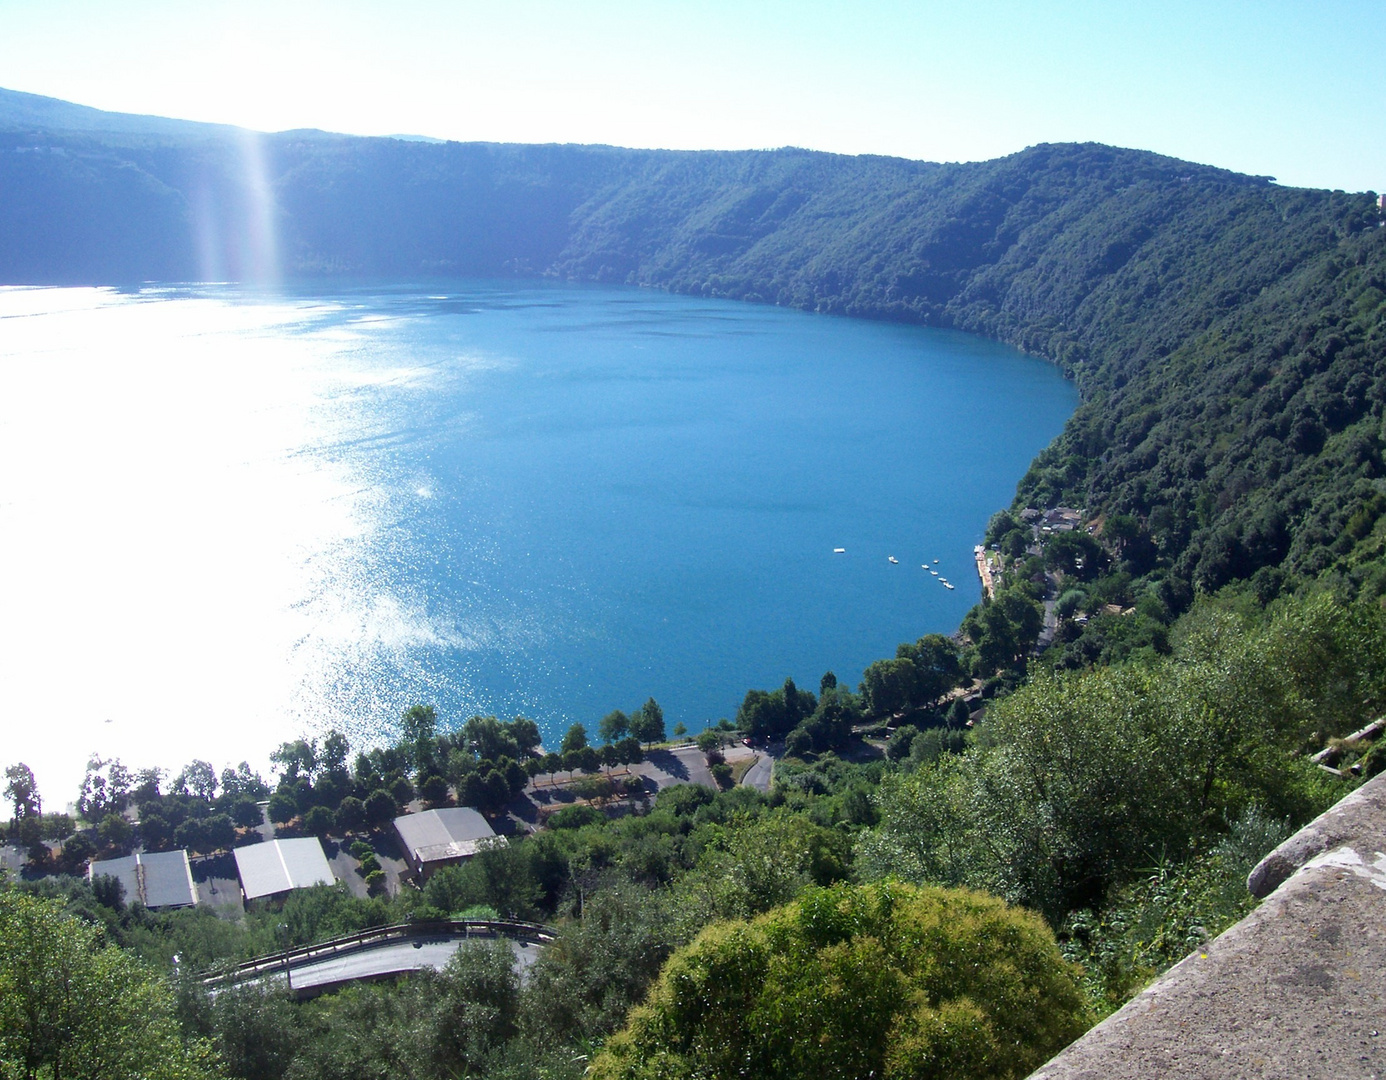 Der Albaner See in Castel Gandolfo